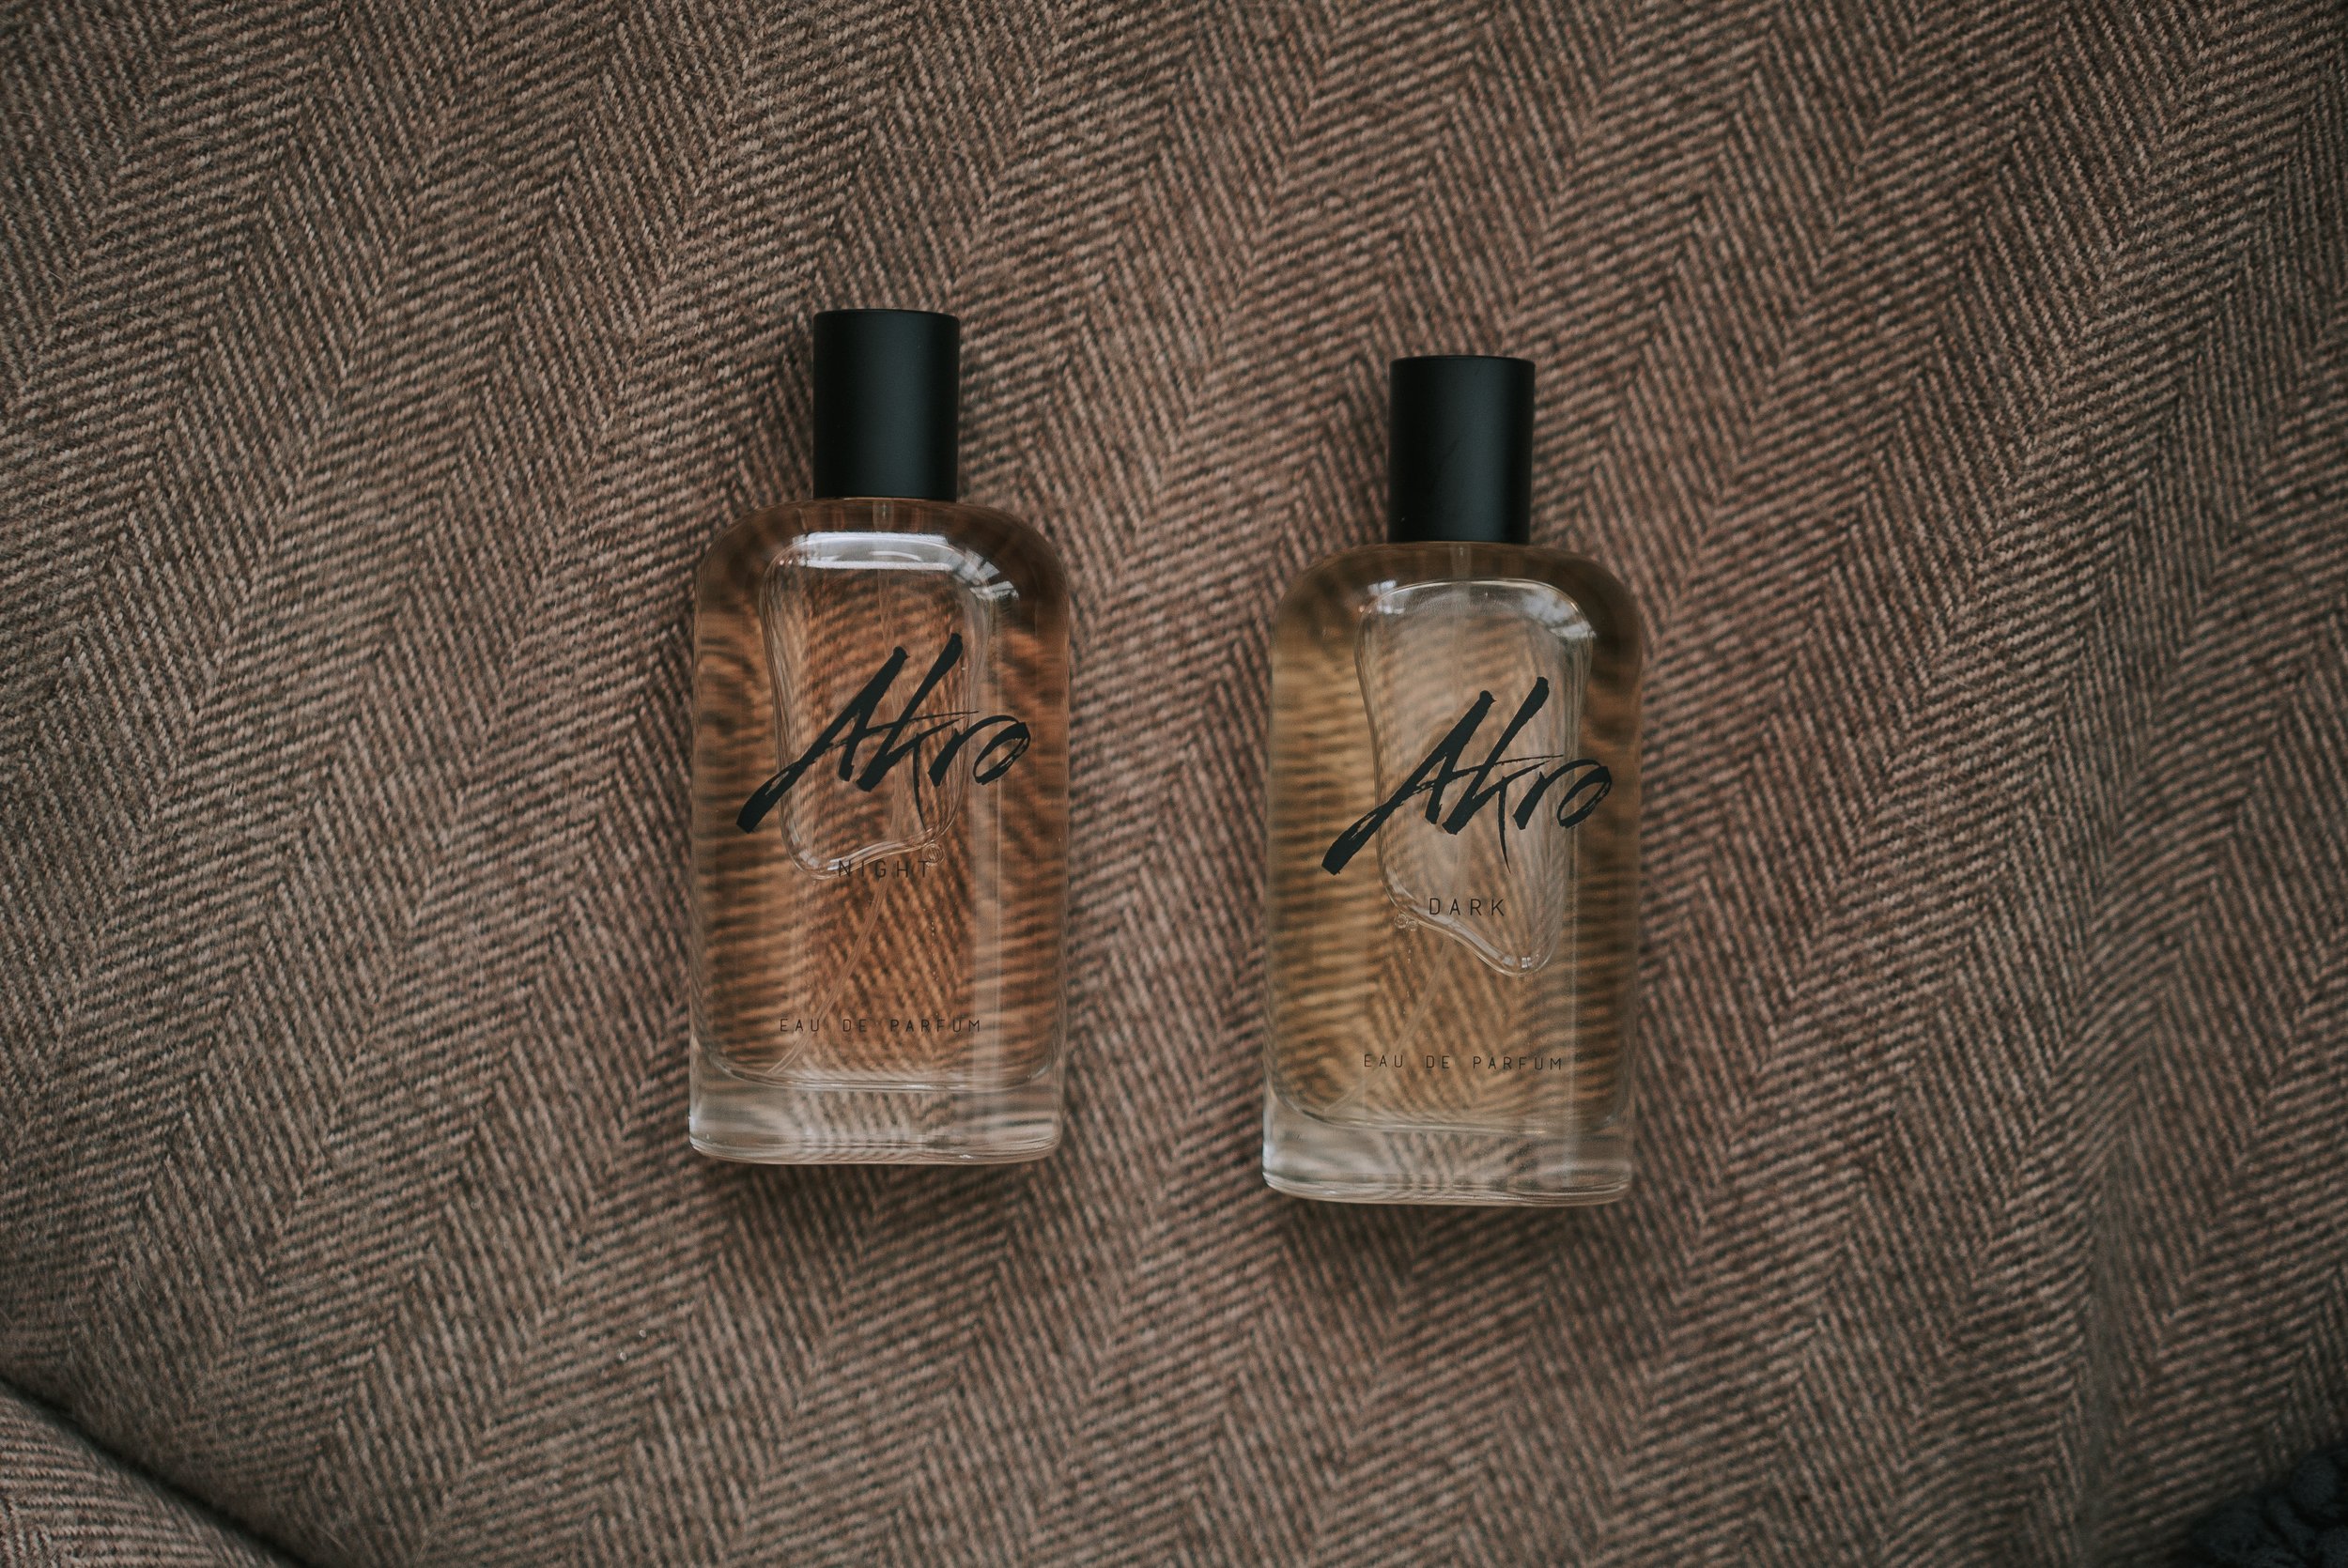 AKRO Fragrances